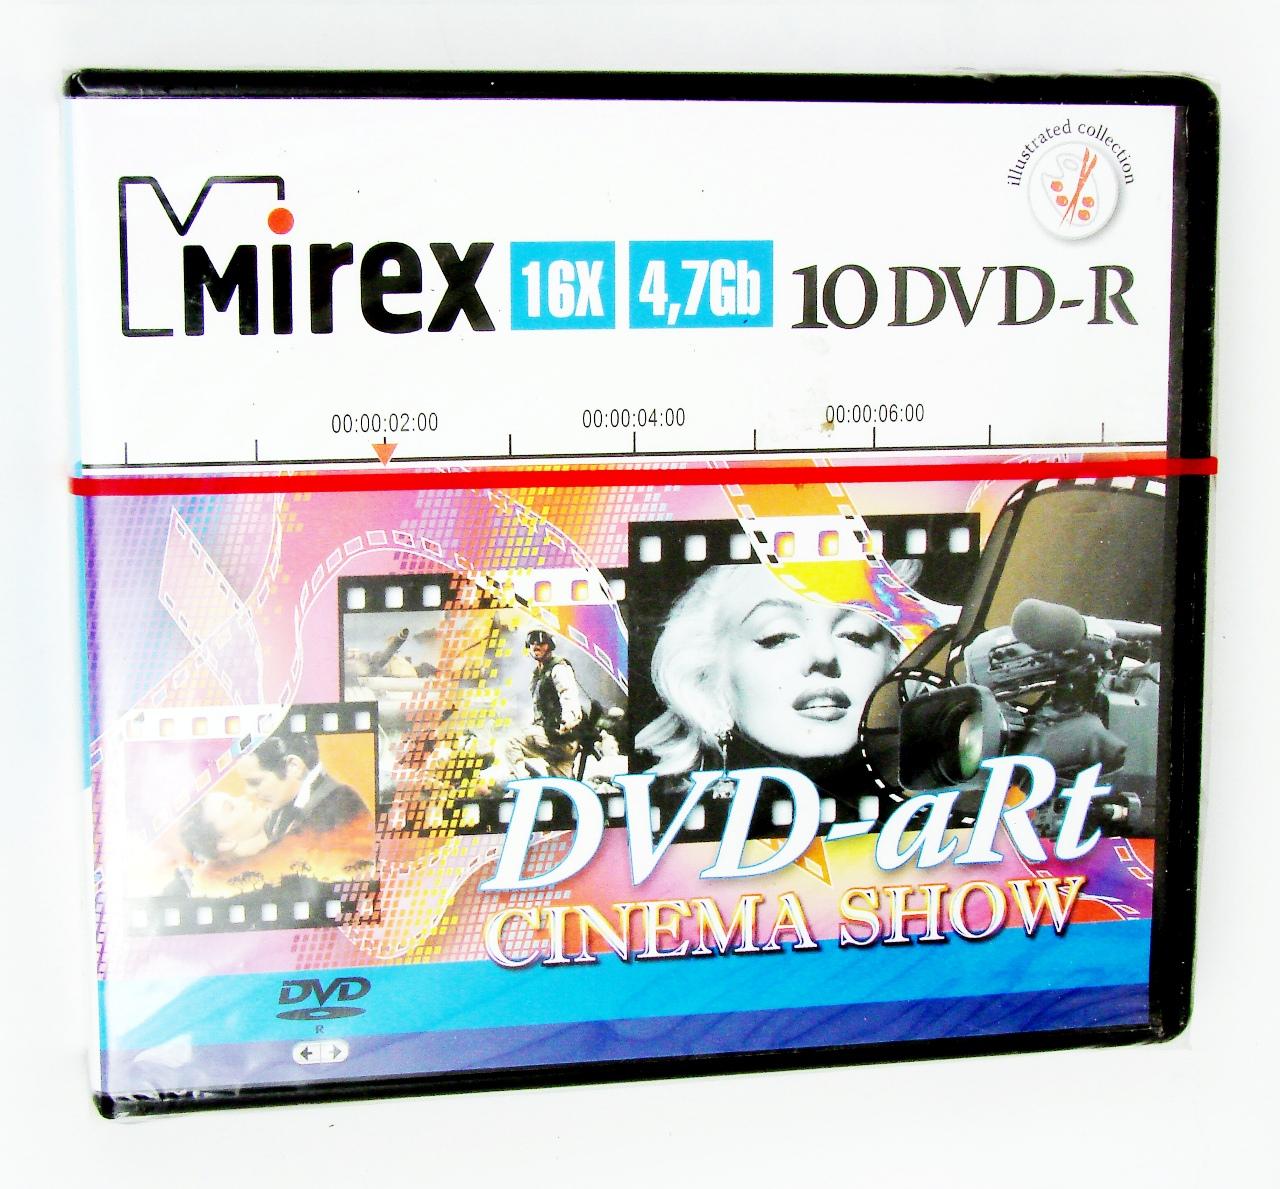 DVD-R 4,7 Gb Mirex 16x DVD-aRt CINEMA, 10   